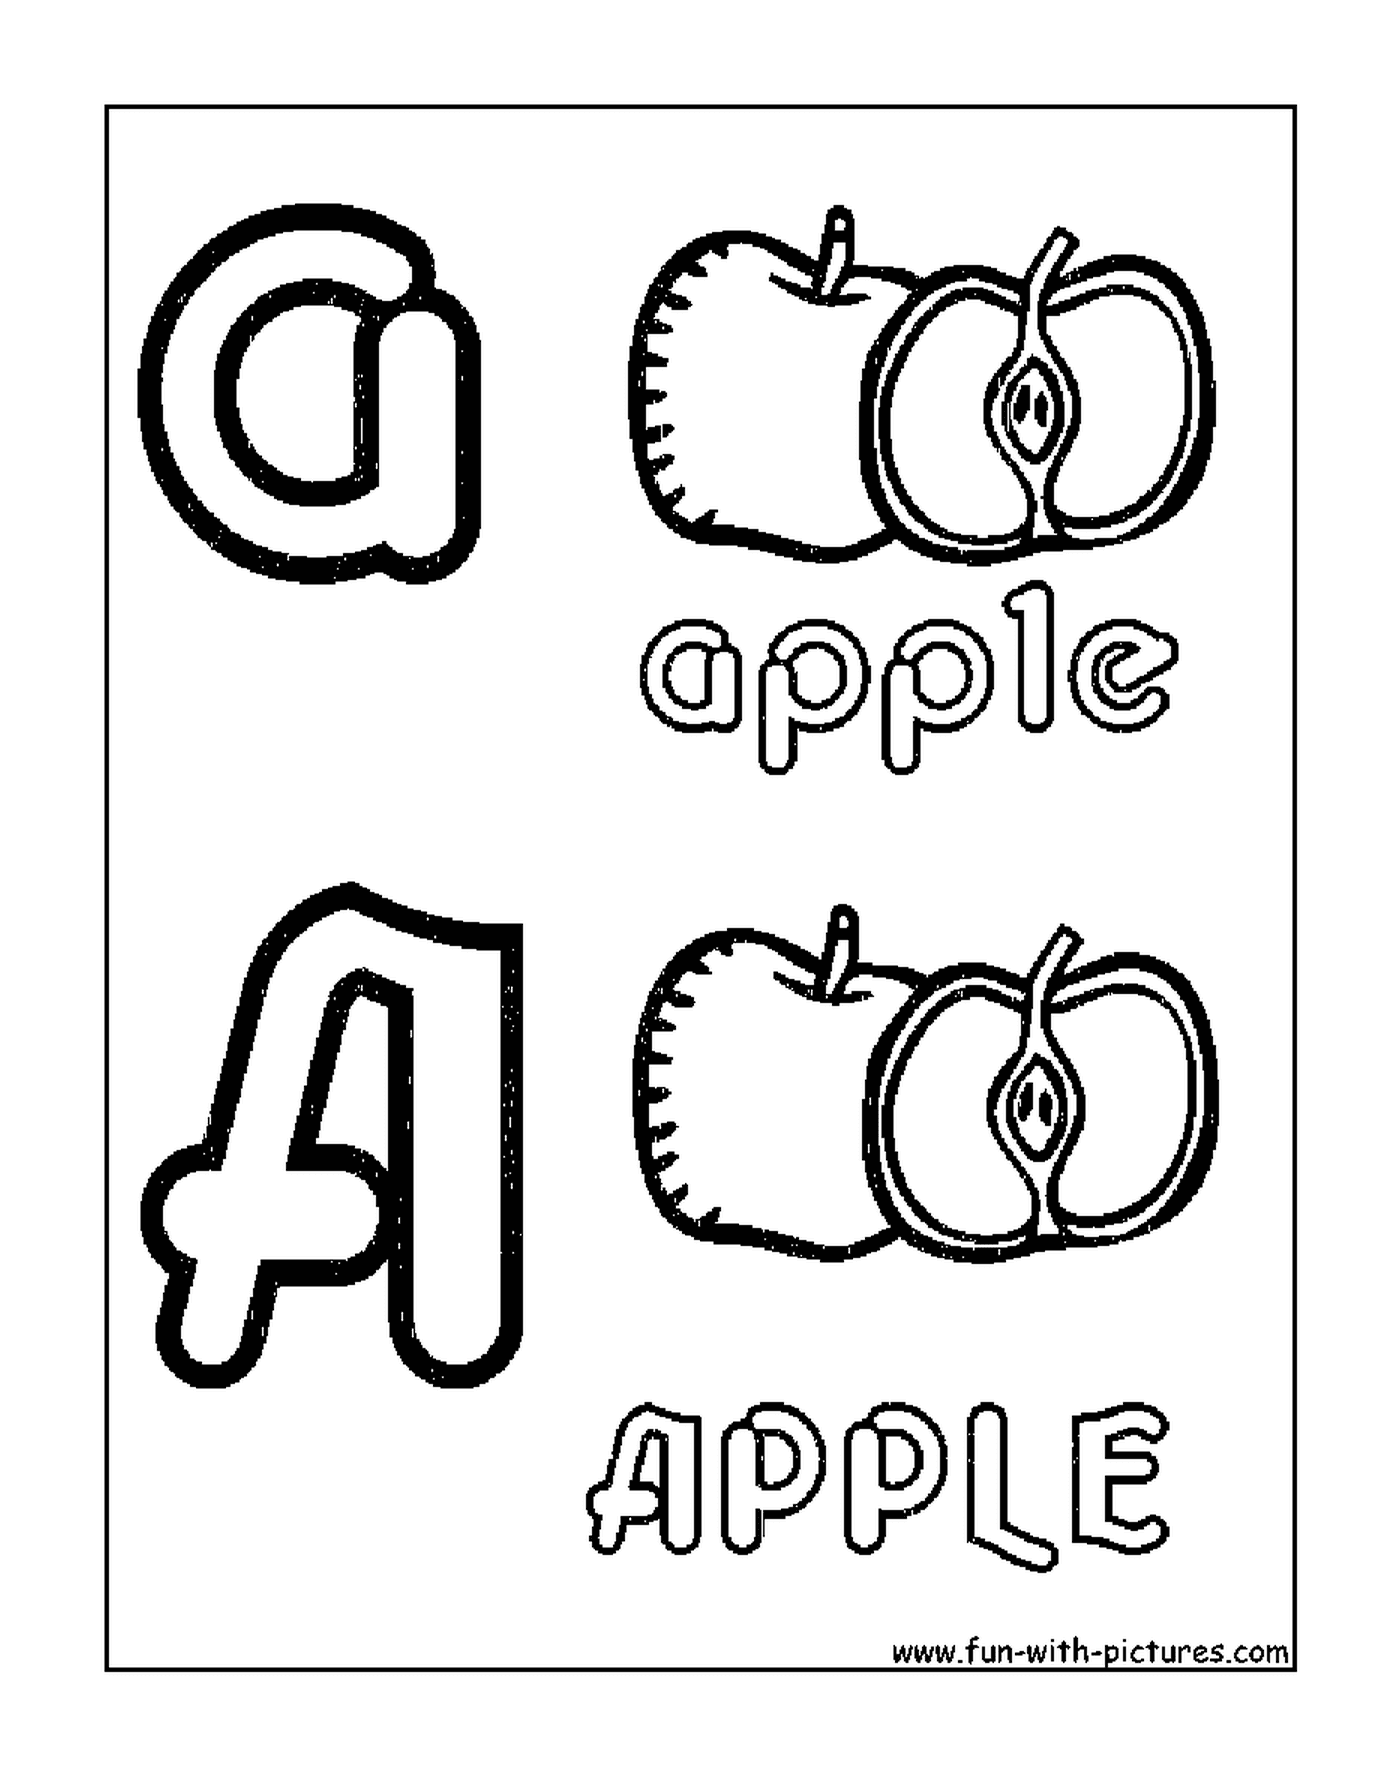   apple dans l'alphabet 